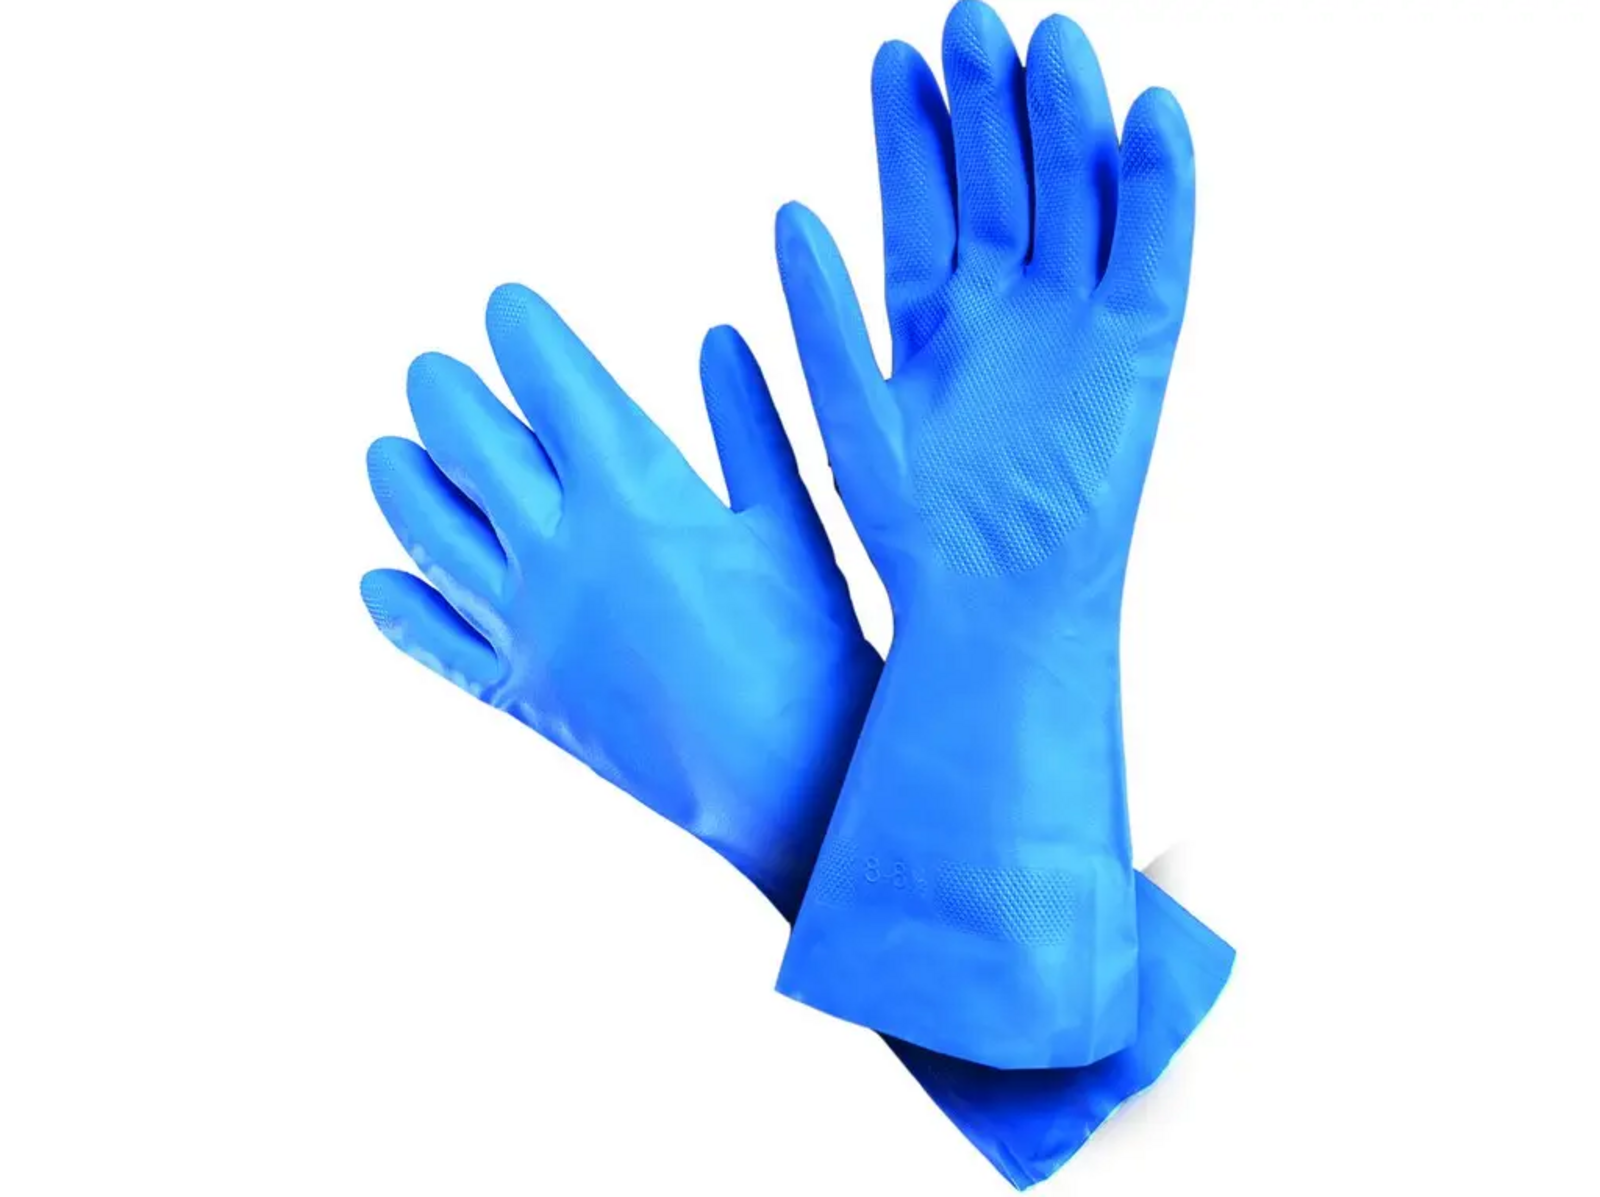 Kyselinovzdorné rukavice Mapa Ultranitril 495 - veľkosť: 6/XS, farba: modrá